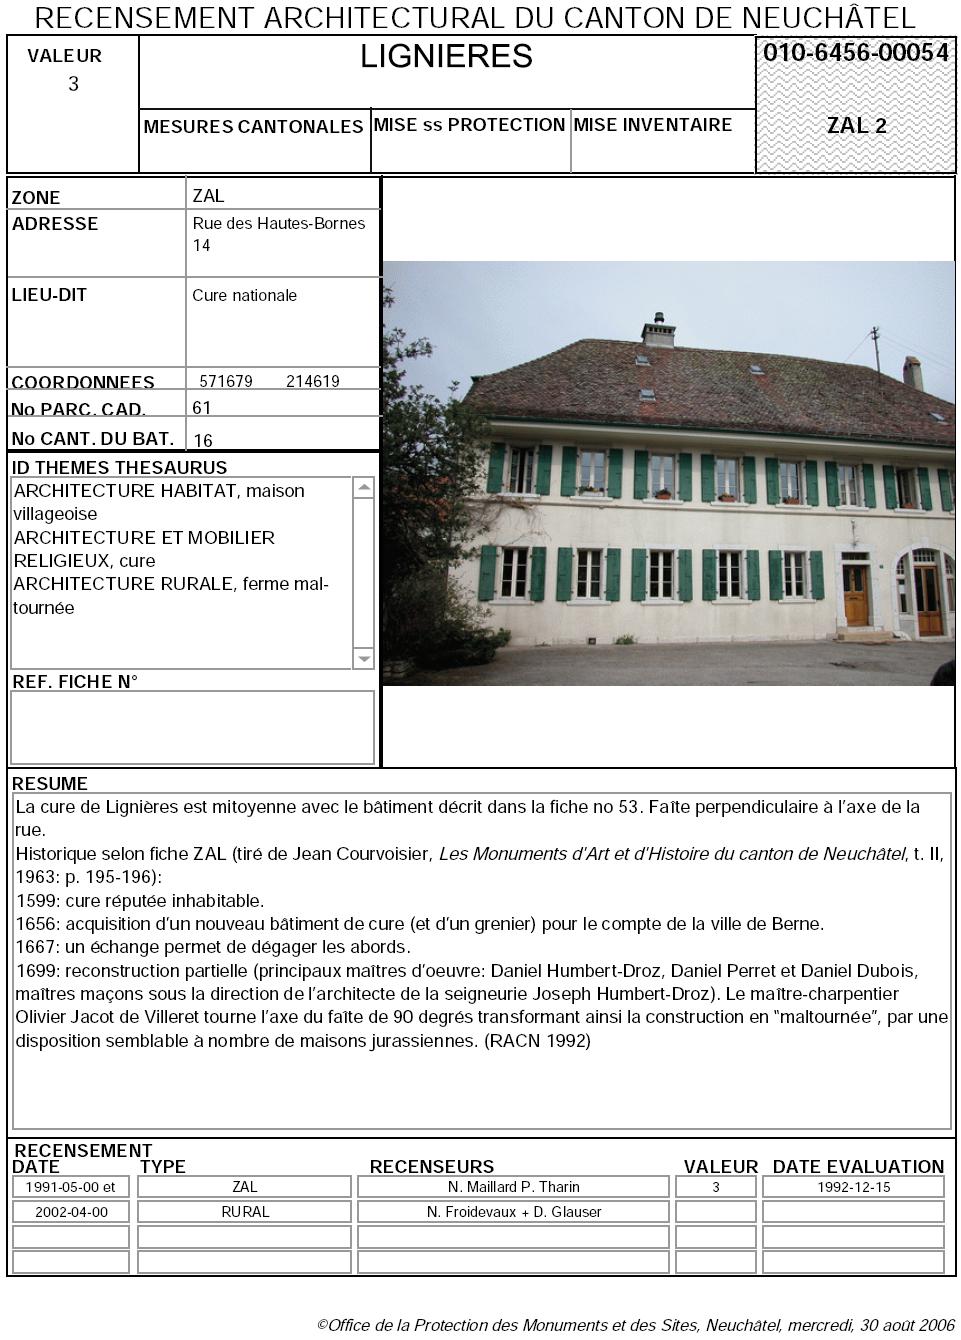 Recensement architectural du canton de Neuchâtel: Fiche 010-6456-00054